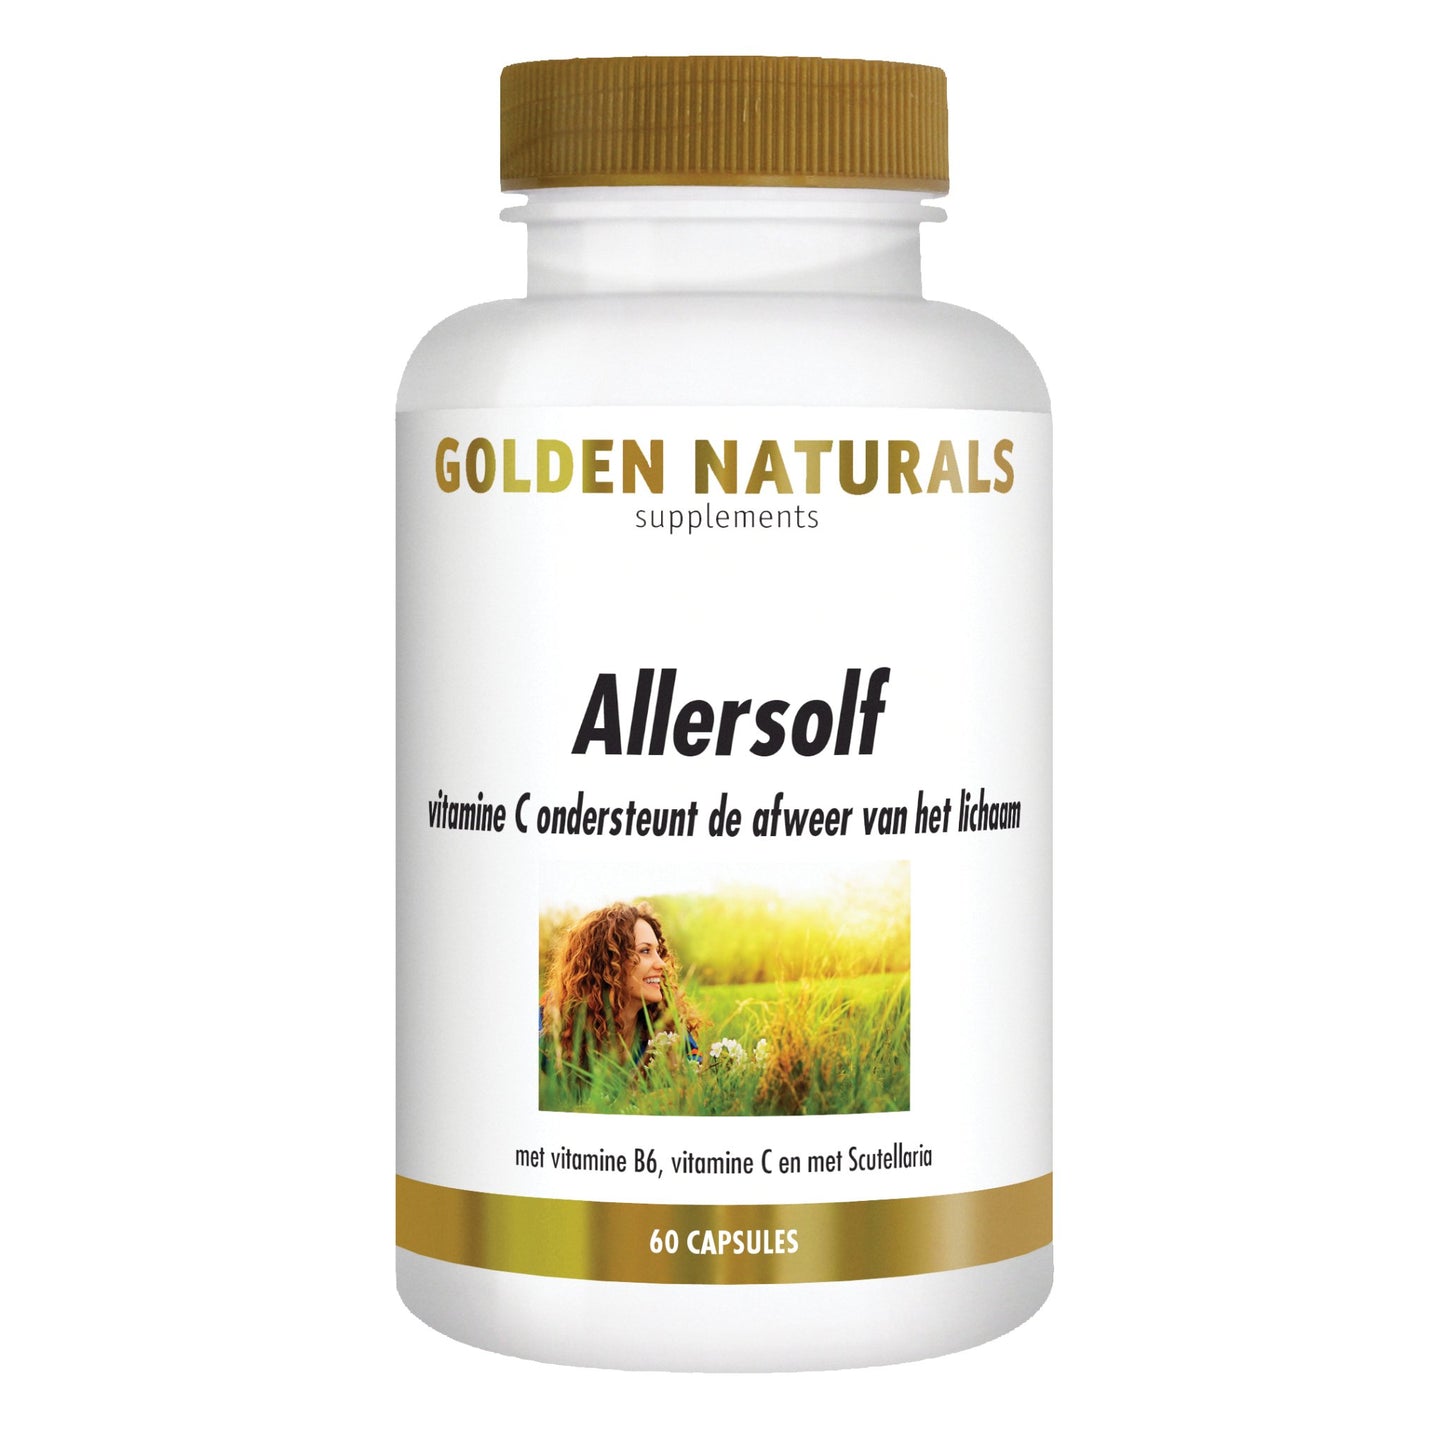 Allersolf - 60 - capsules Supplement Golden Naturals   